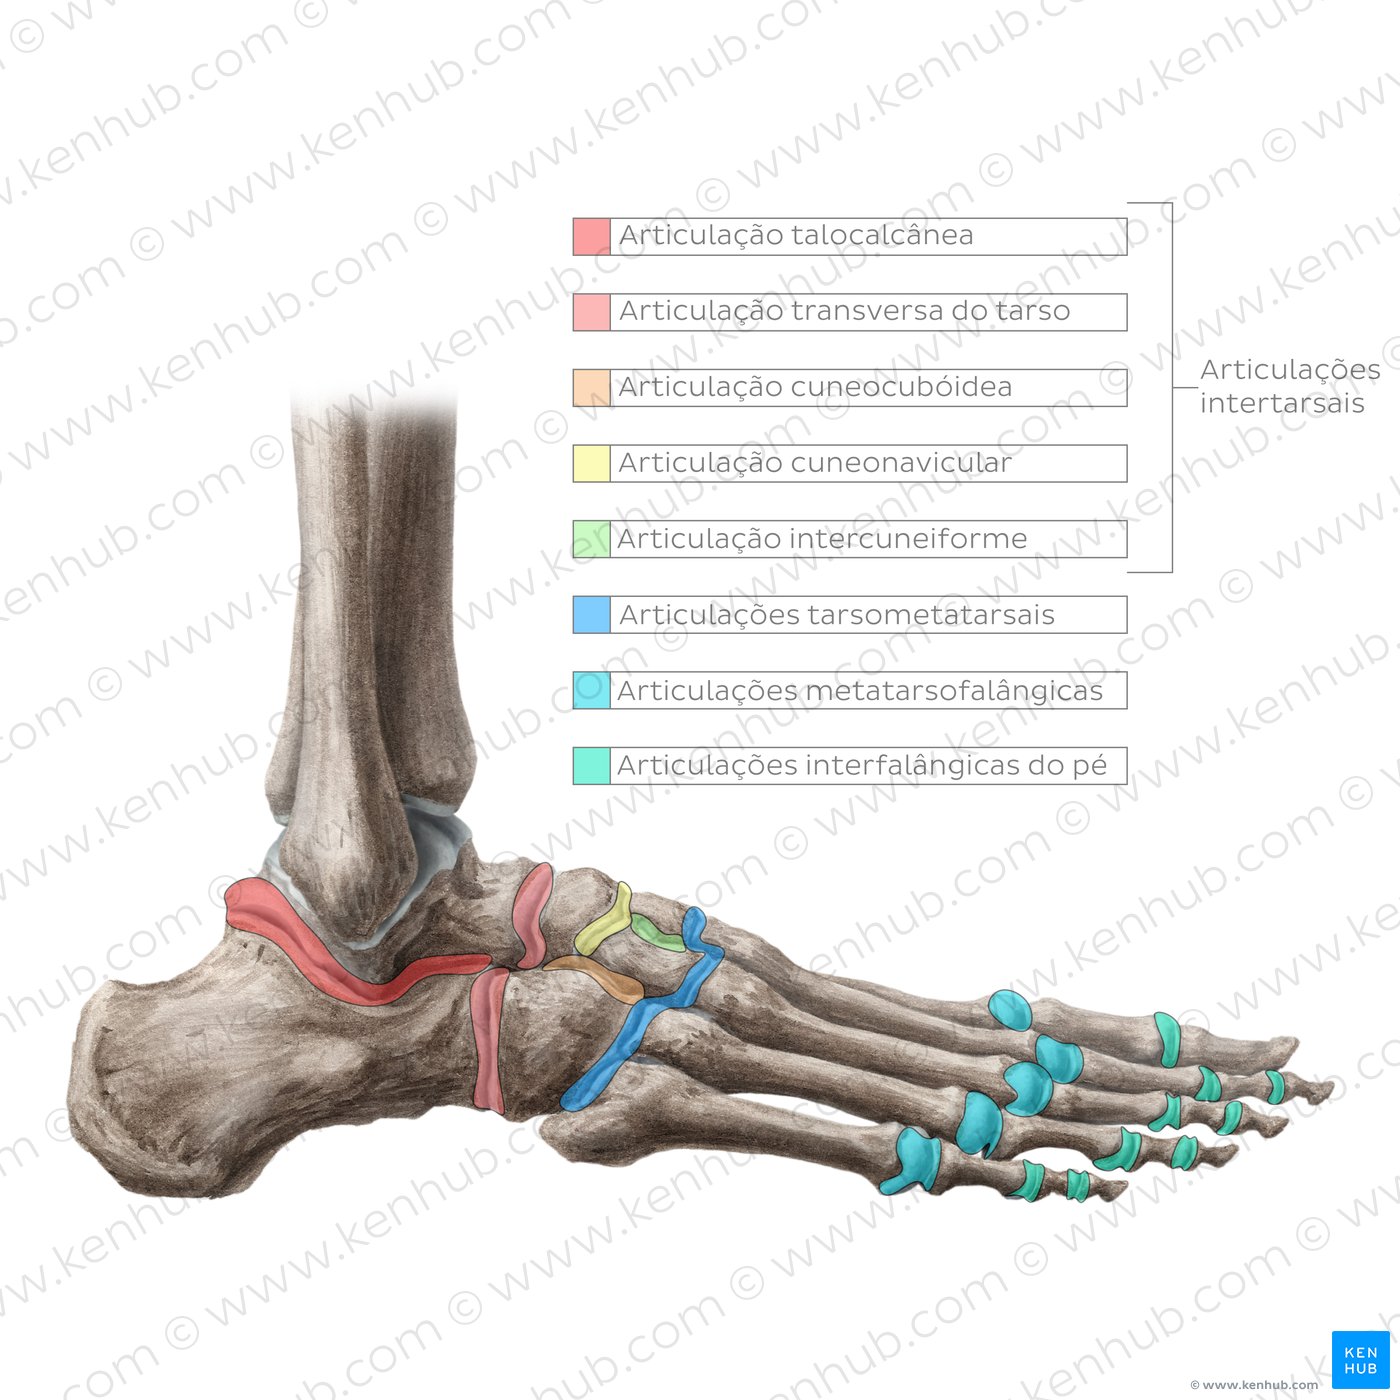 Anatomia da articulação do tornozelo